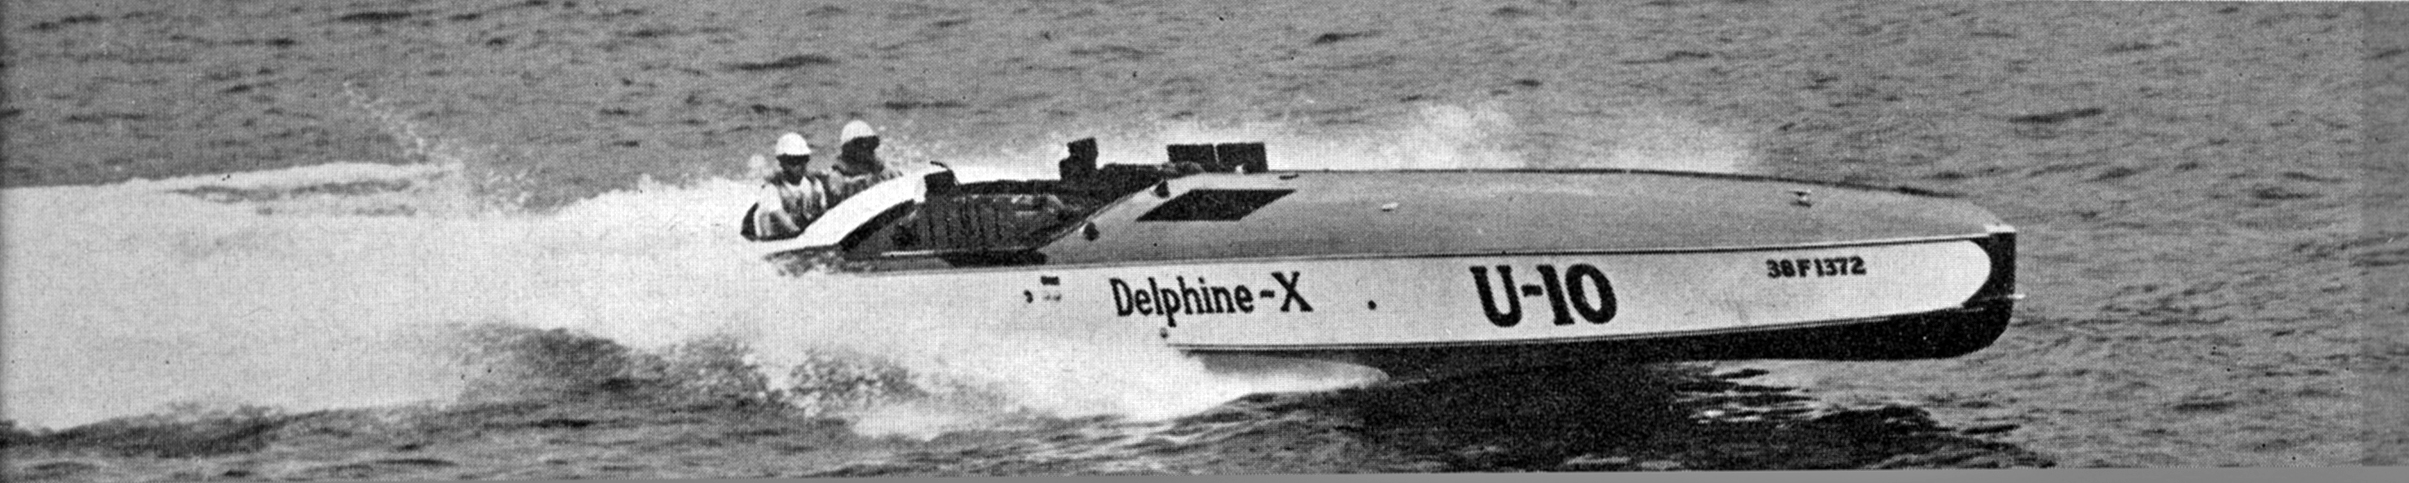 >Delphine X 